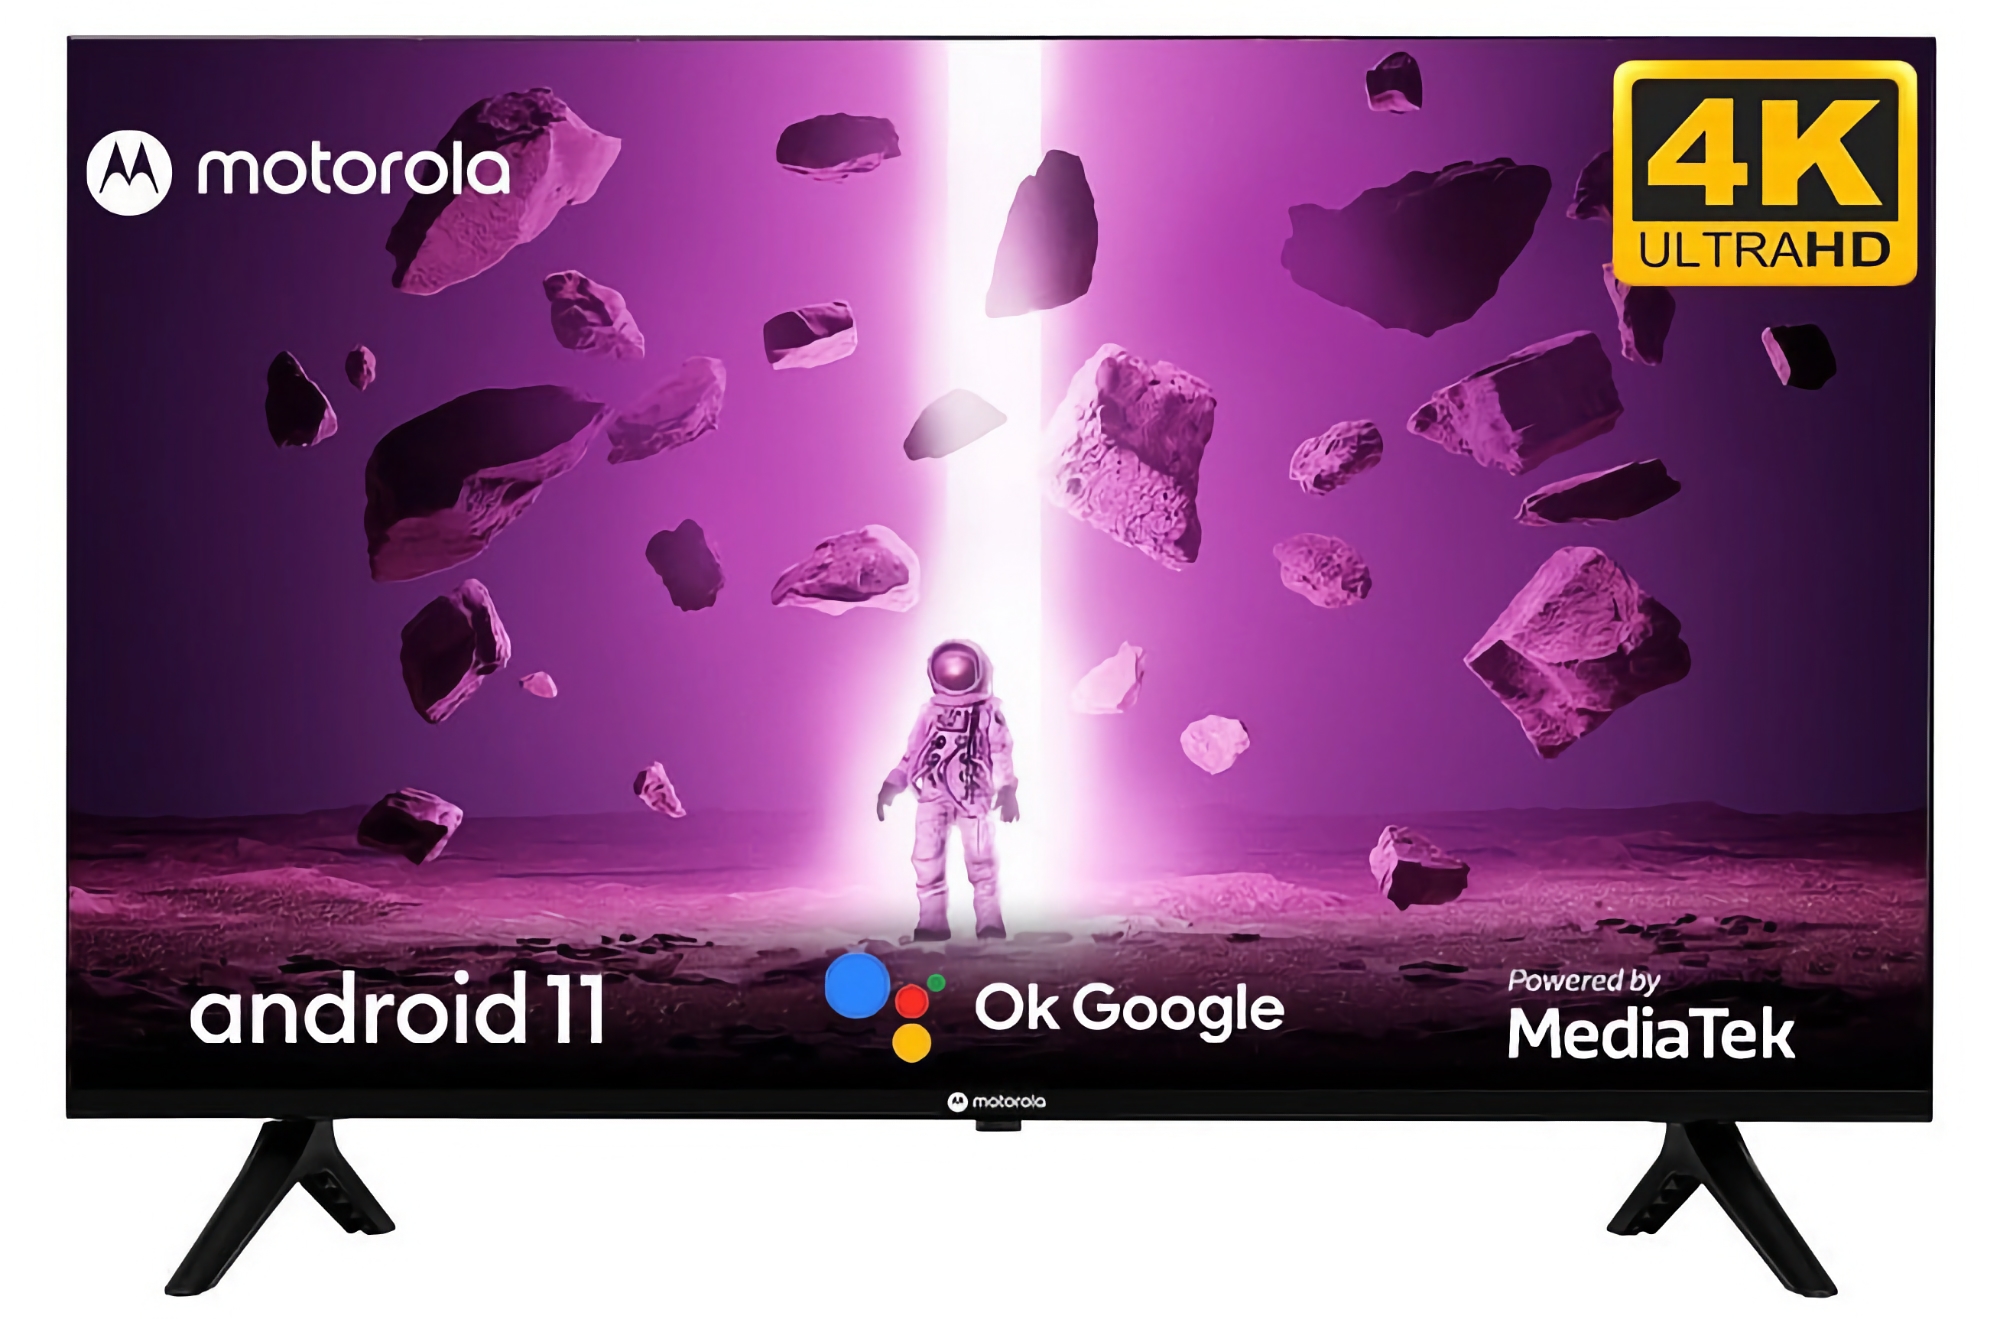 Motorola Envision: smart TV-reeks met tot 55in schermen en MediaTek-processoren vanaf $122